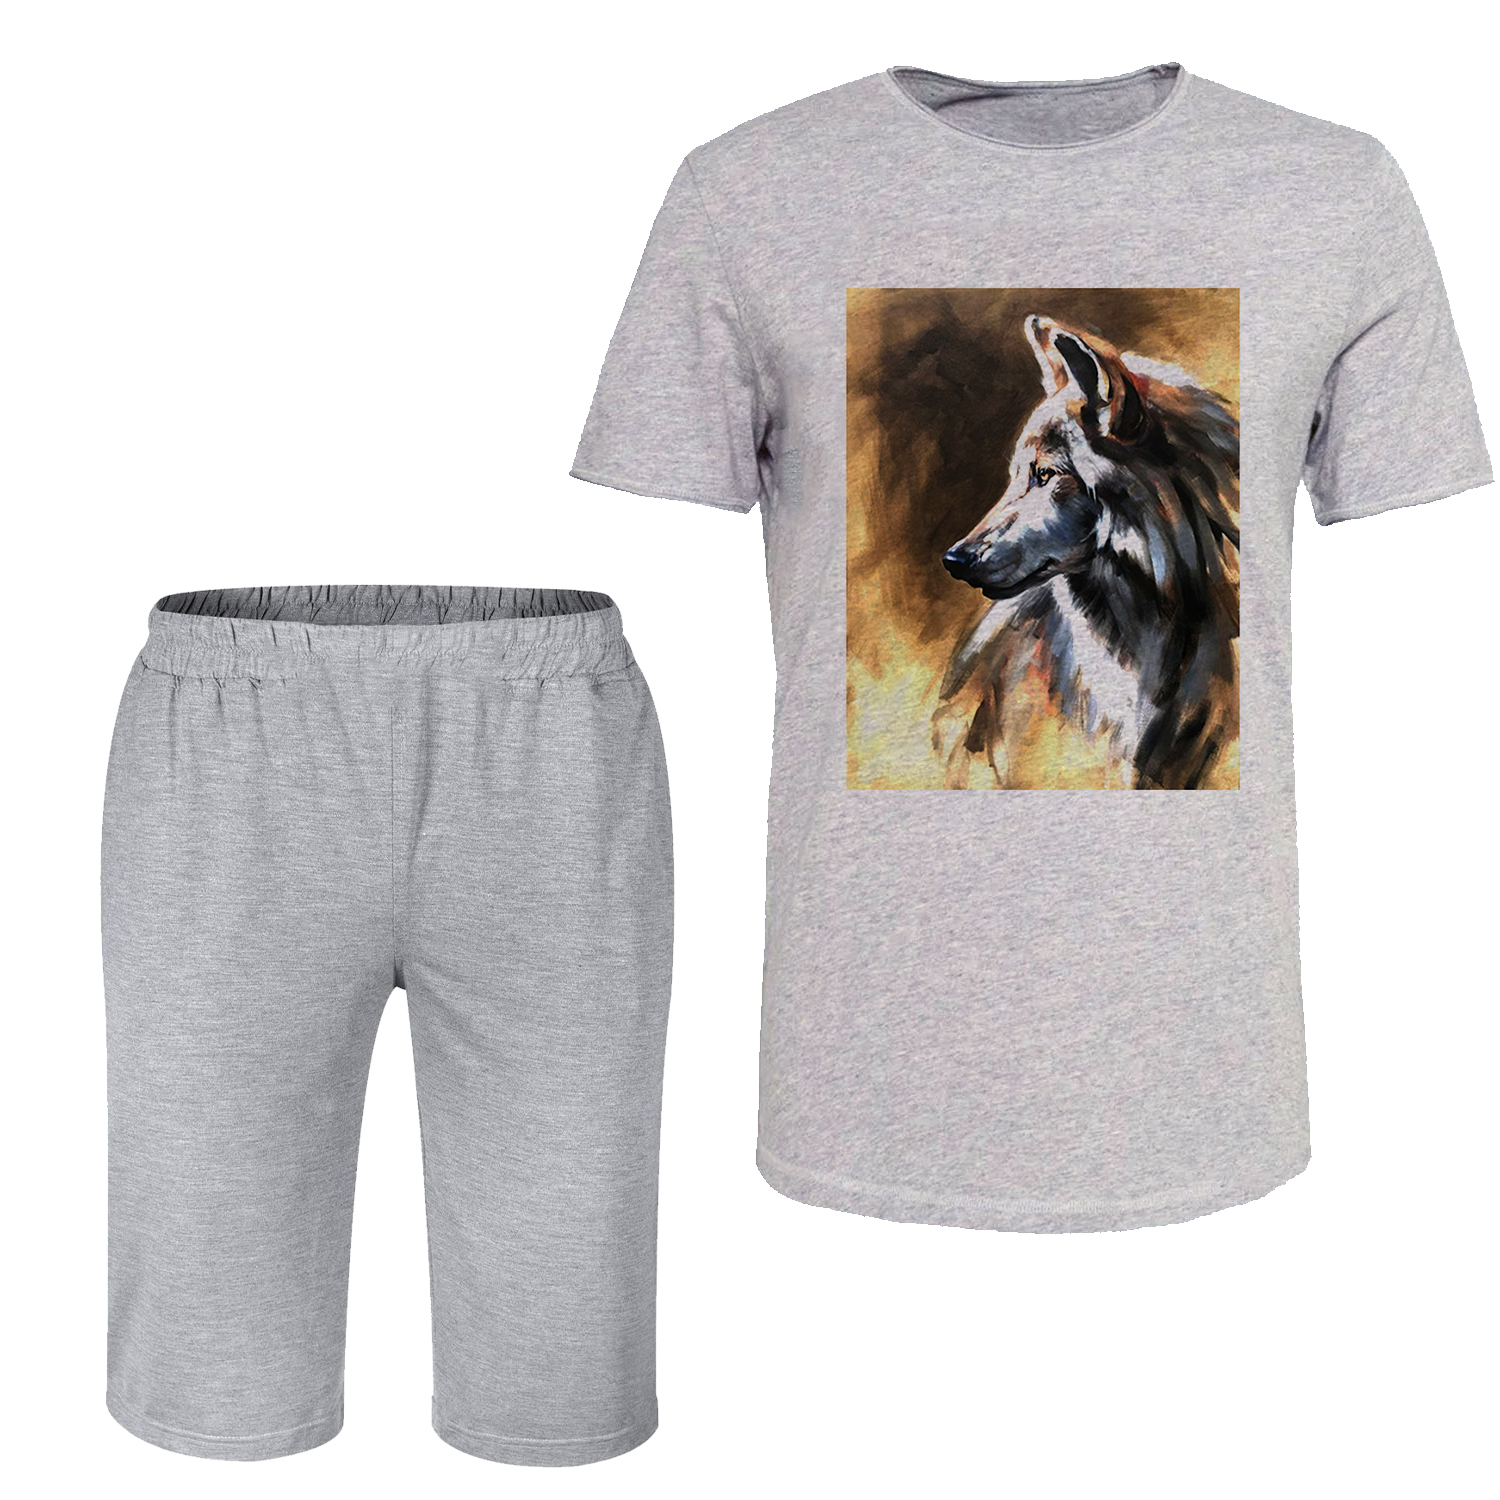 ست تی شرت آستین کوتاه و شلوارک مردانه مدل گرگ کد C33 رنگ طوسی